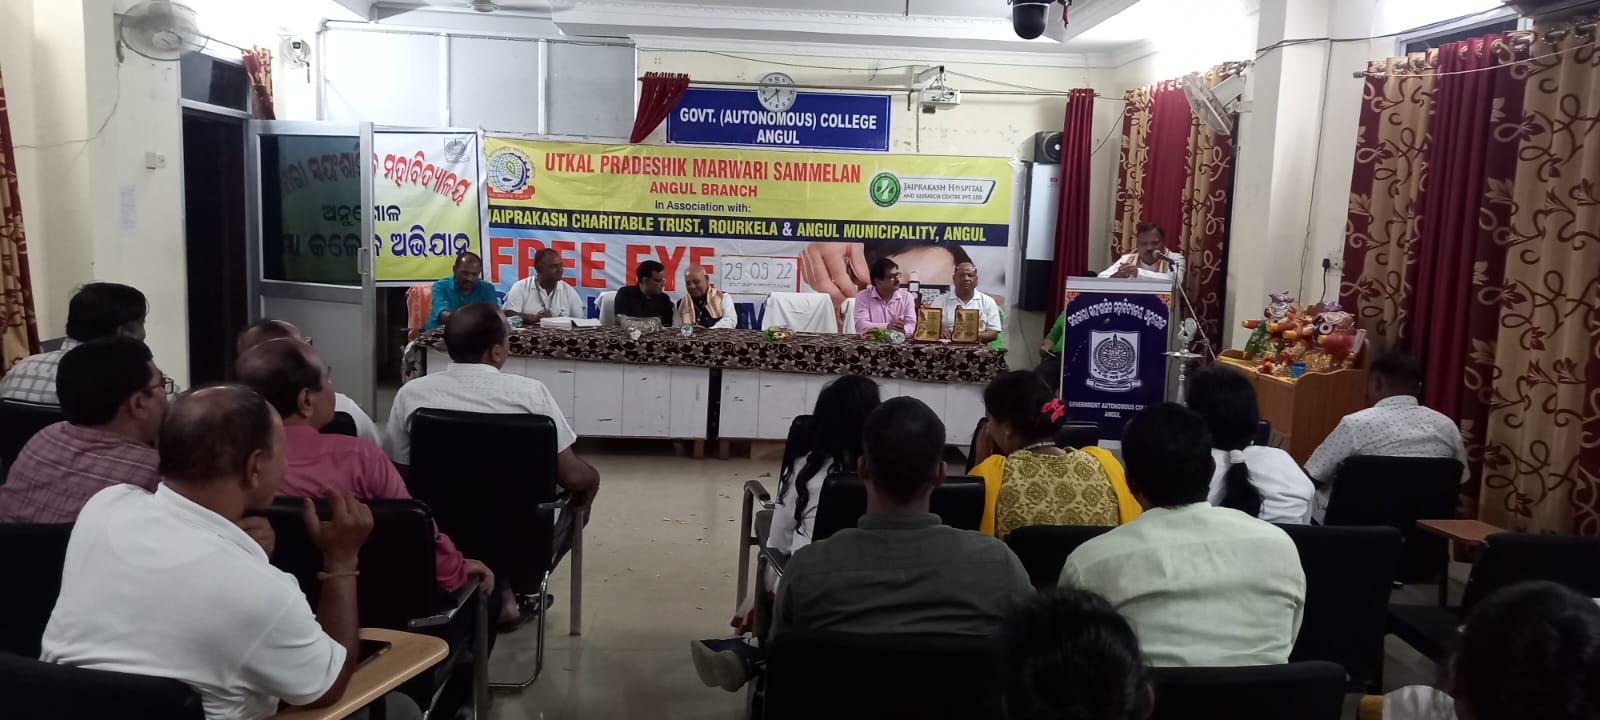 [29.09.2022]Free Eye Check Up in association with Utkal Pradeshik Marwari Sammelan, Angul Branch